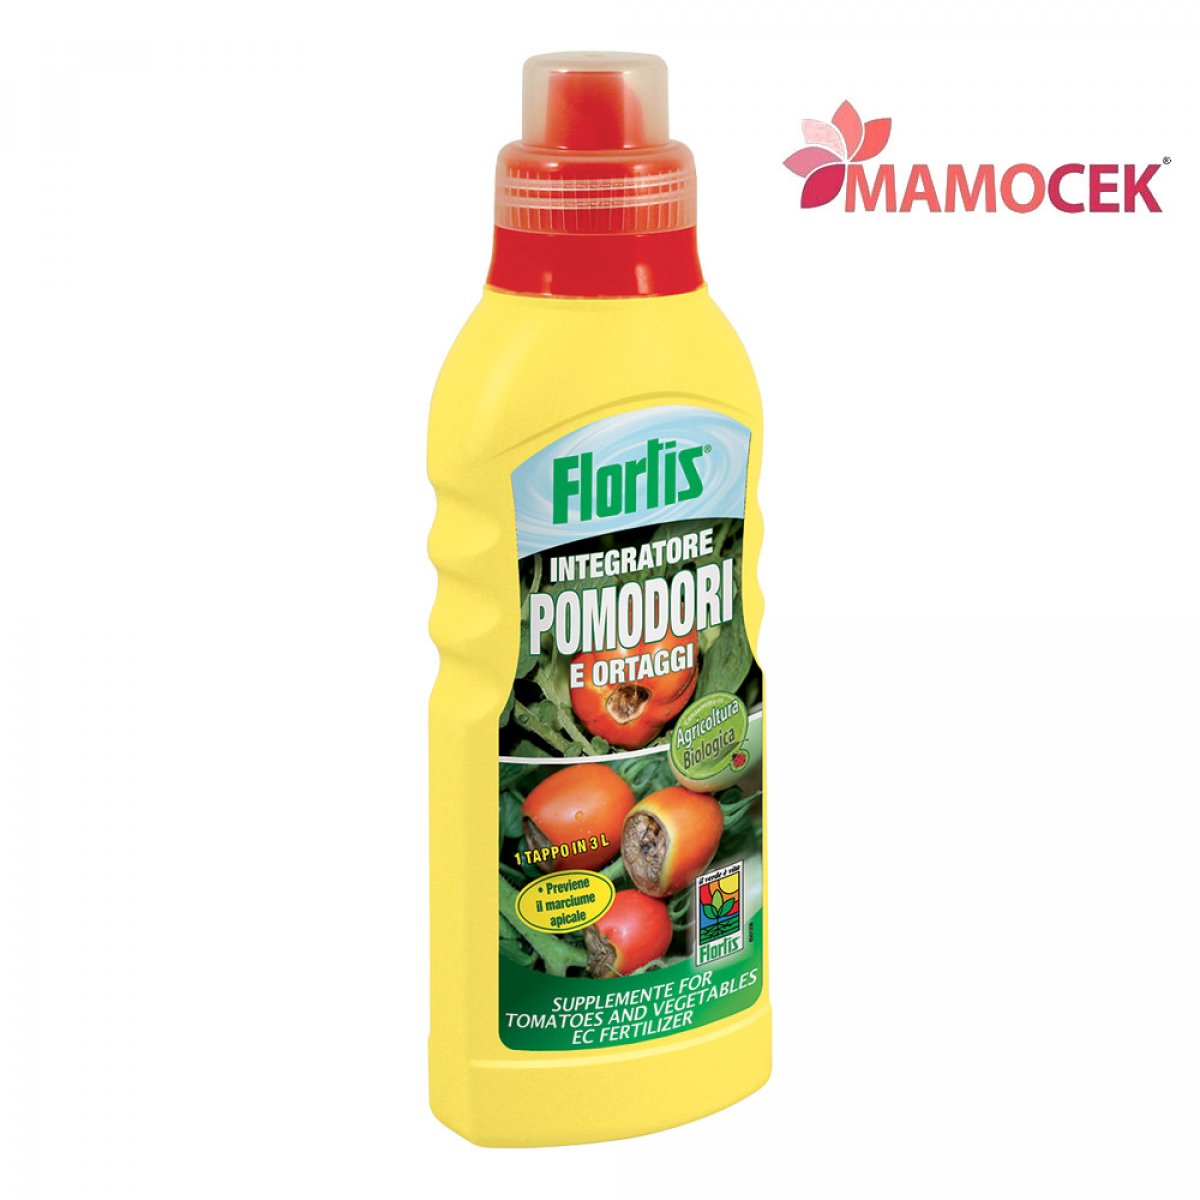 FLORTIS Integratore pomodori ortaggi concime previene marciume apicale conf. 570 g